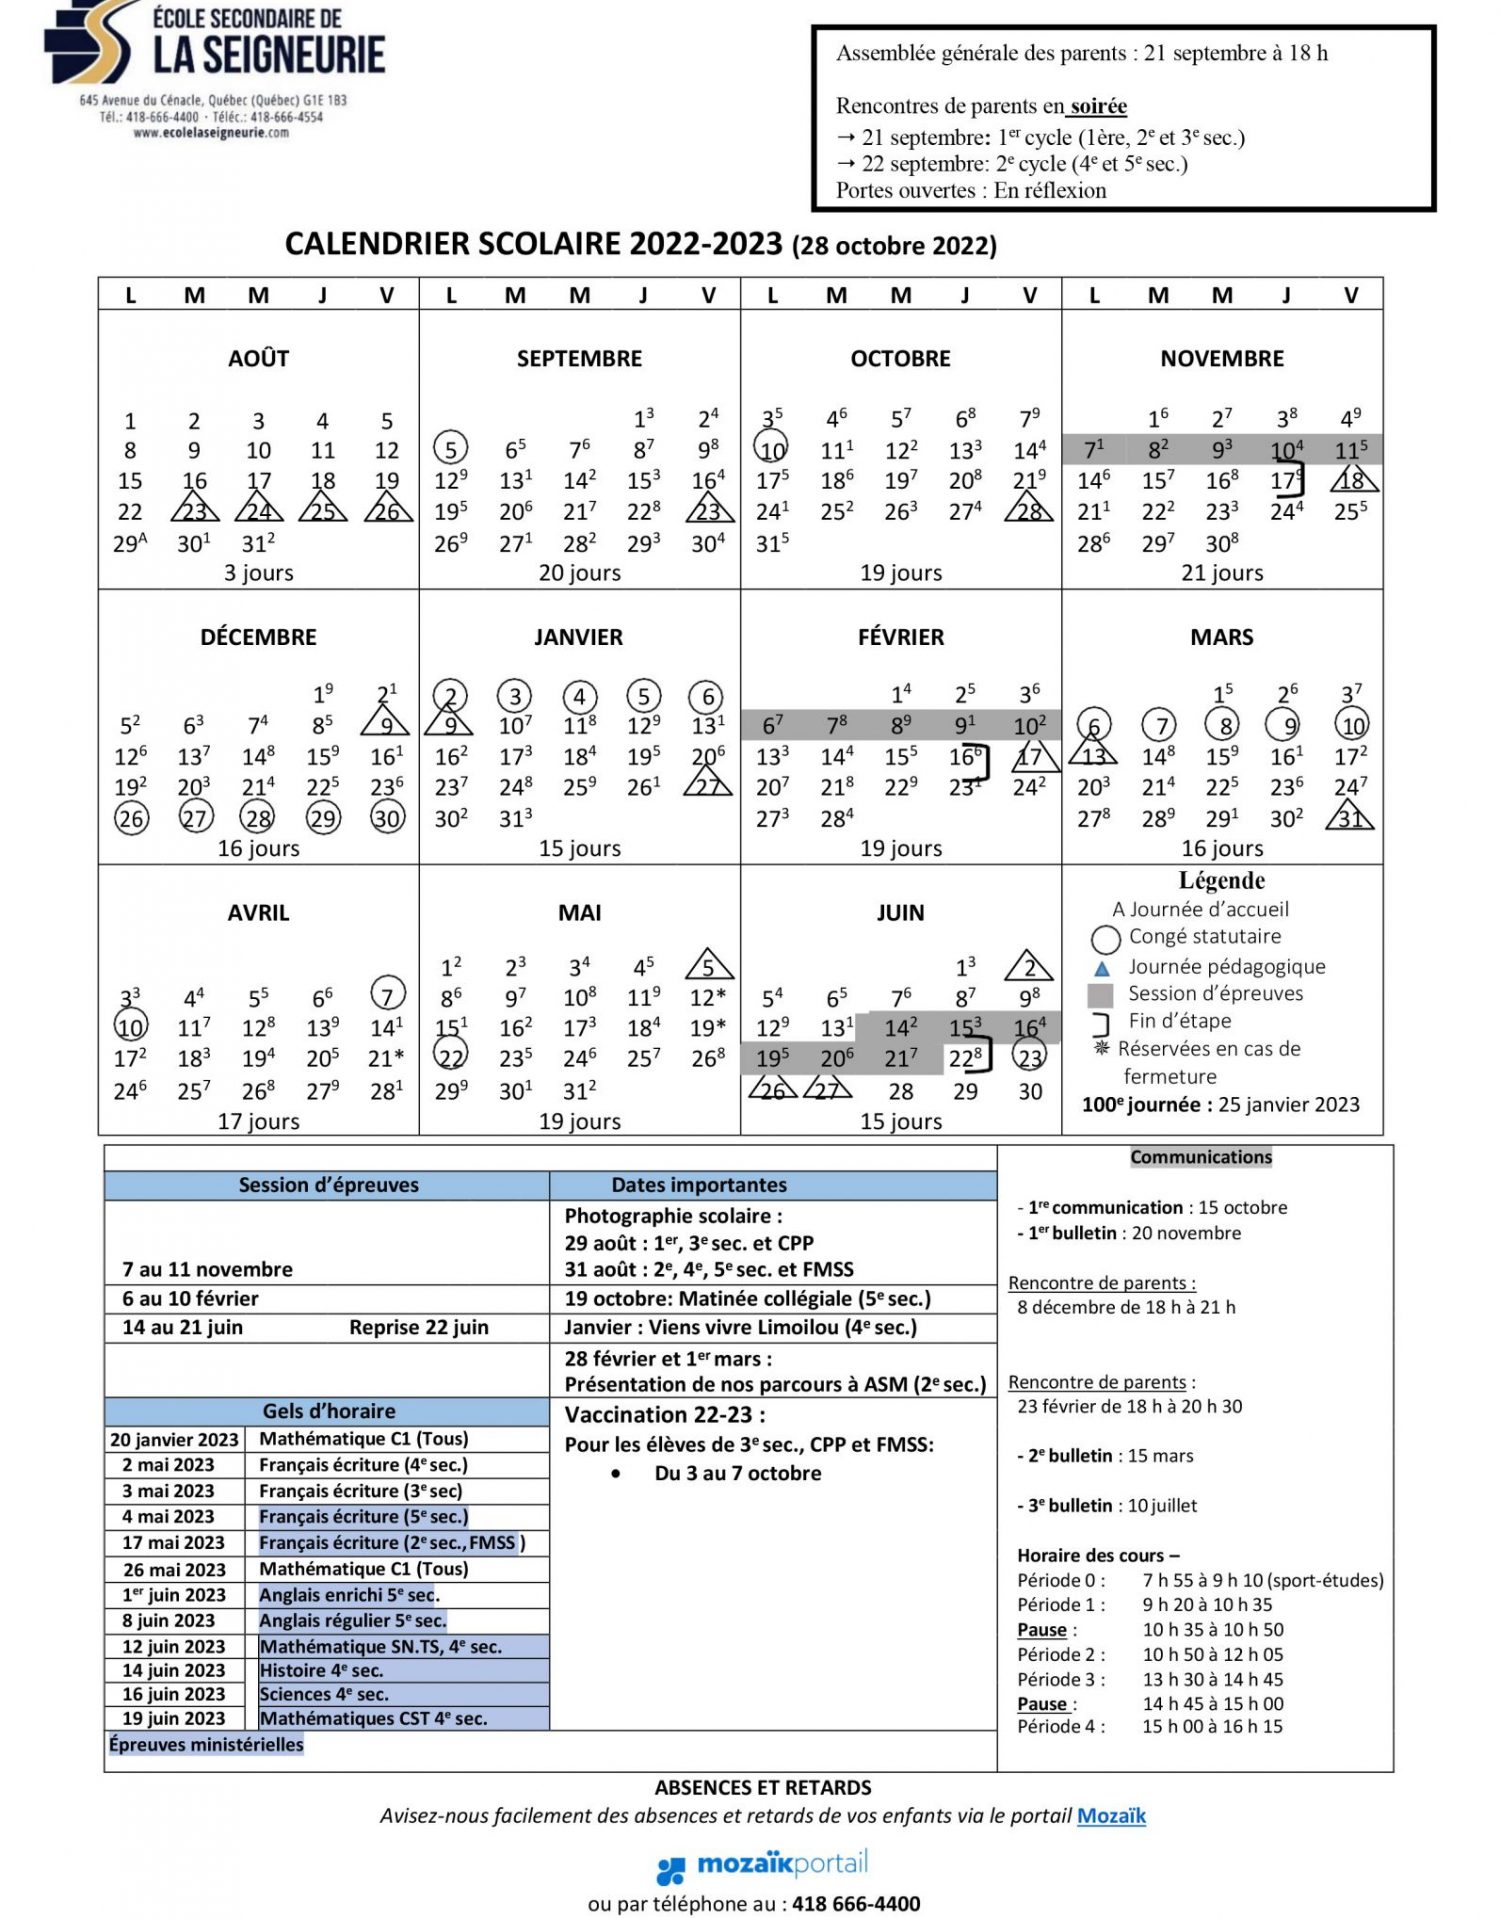 Calendrier scolaire 2022-2023 - Nov